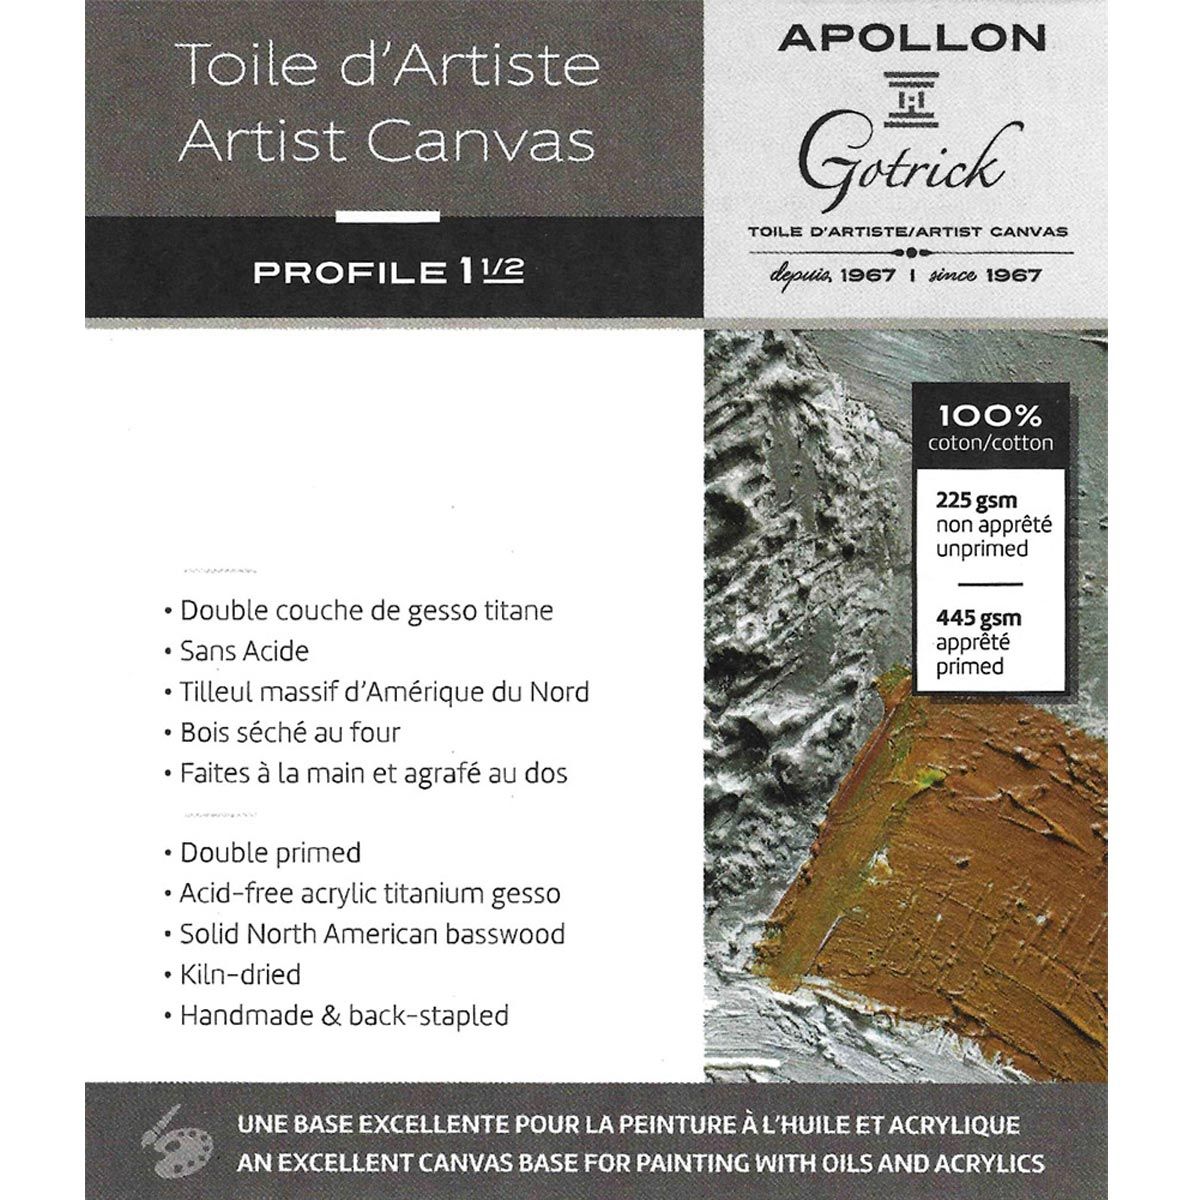 Apollon Gotrick Gallery Artist Canvas Profile 1½" - 8" x 10"